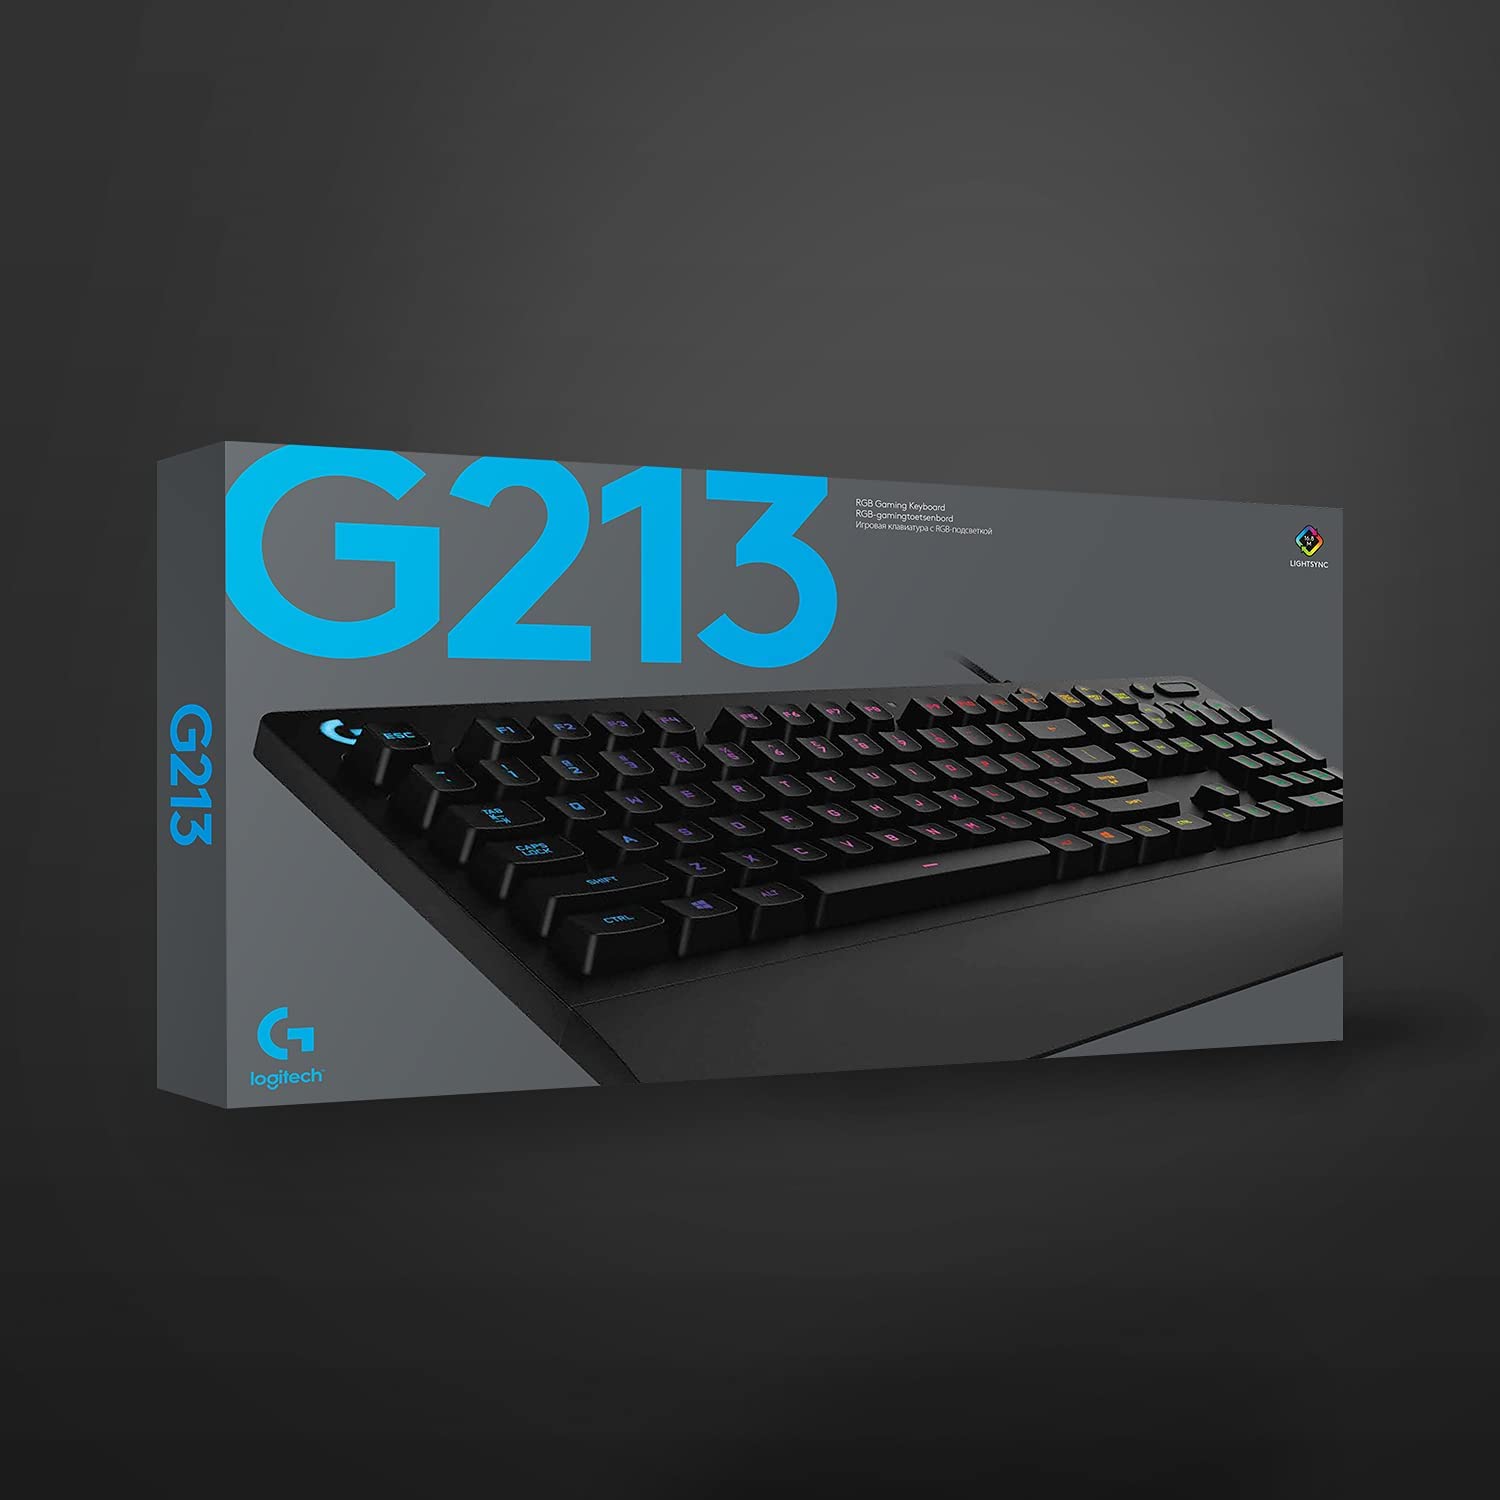 G213